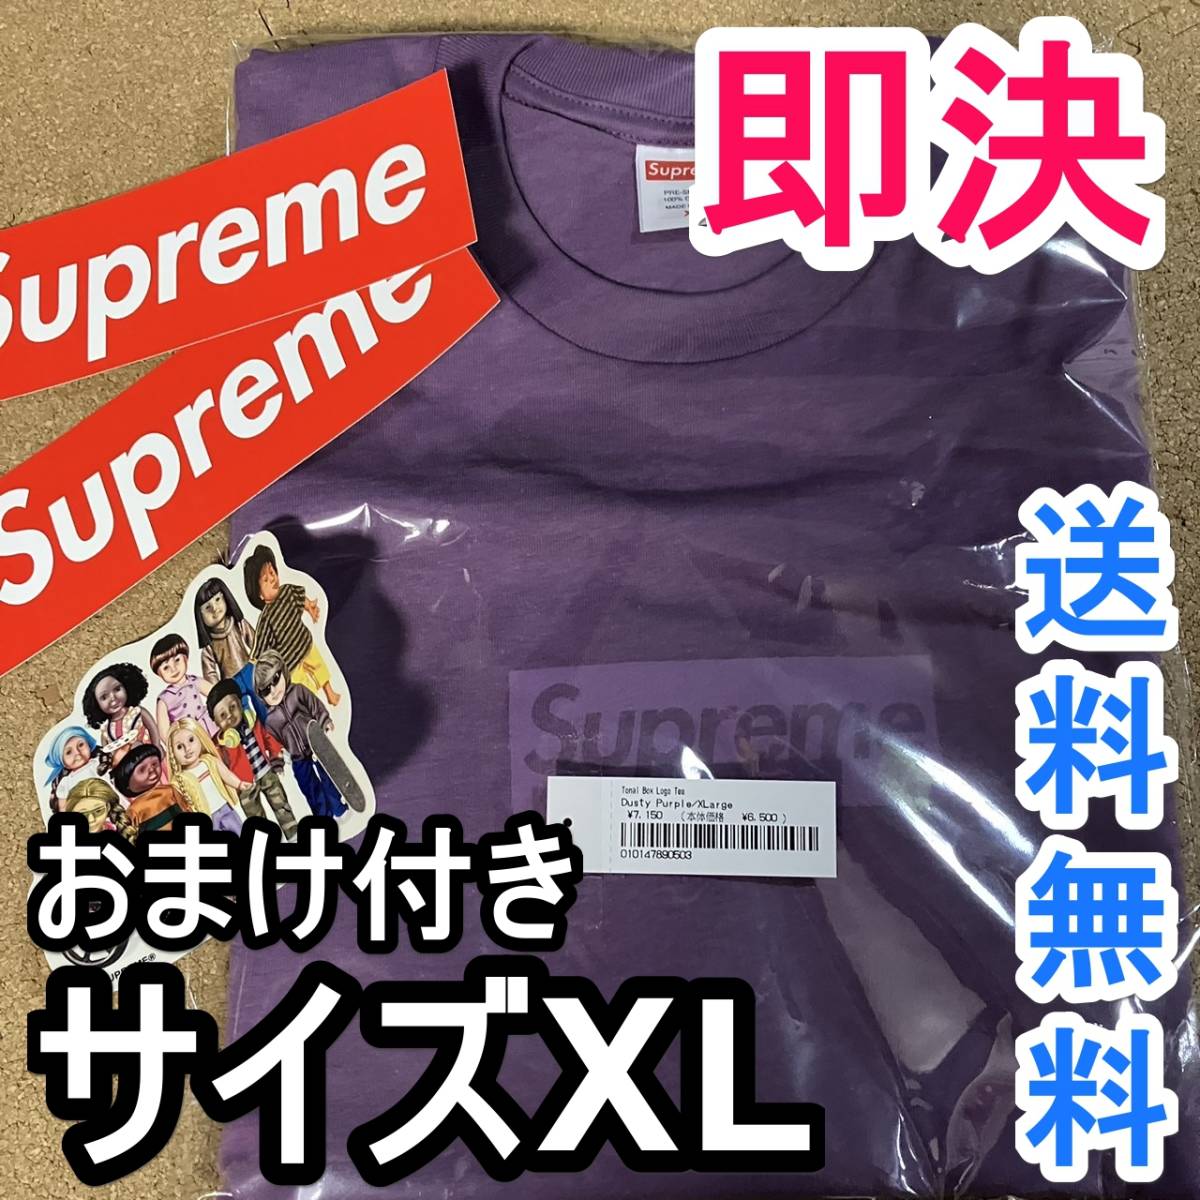 ヤフオク! - サイズXL Supreme tonal box logo tee dusty pur